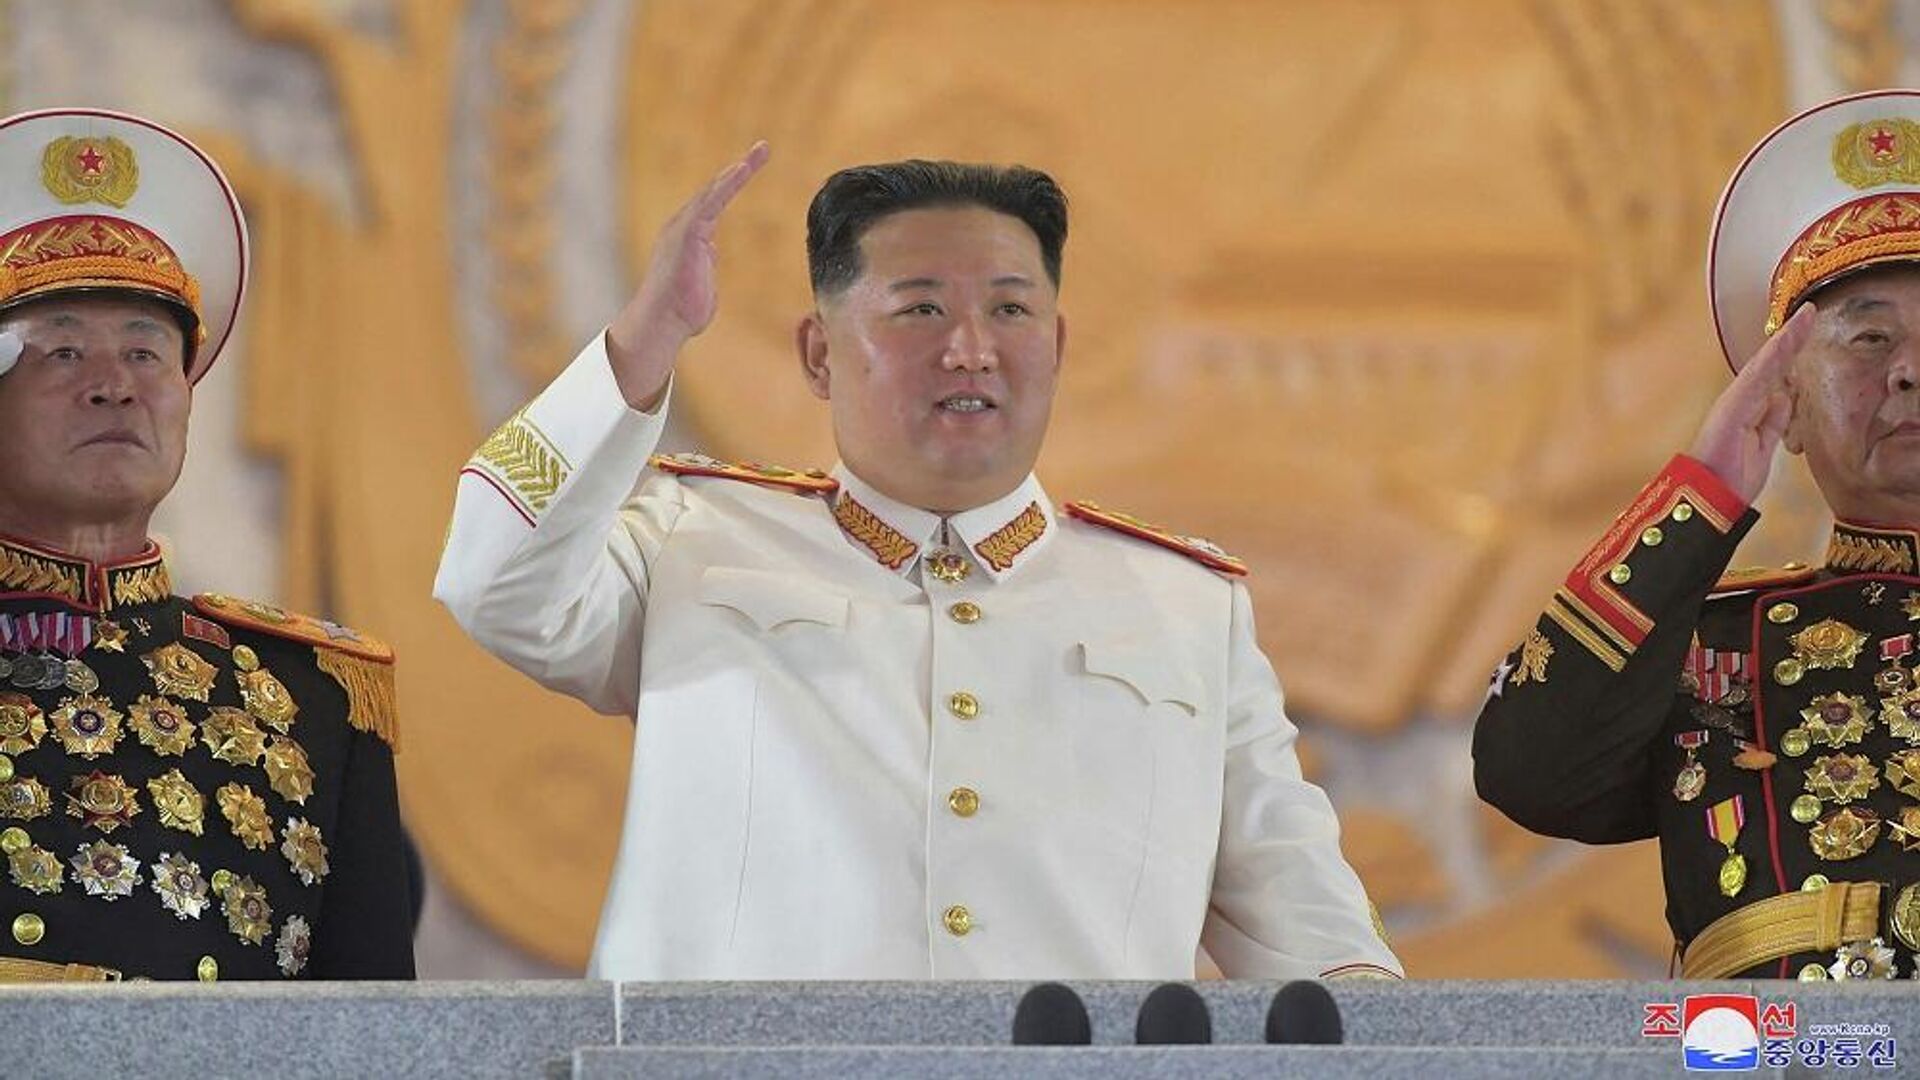 زعيم كوريا الشمالية، كيم جونغ أون، يشارك في عرض عسكري كبير أقيم في ساحة كيم إيل سونغ في بيونغ يانغ، 26 نيسان/ أبريل 2022 - سبوتنيك عربي, 1920, 14.07.2023